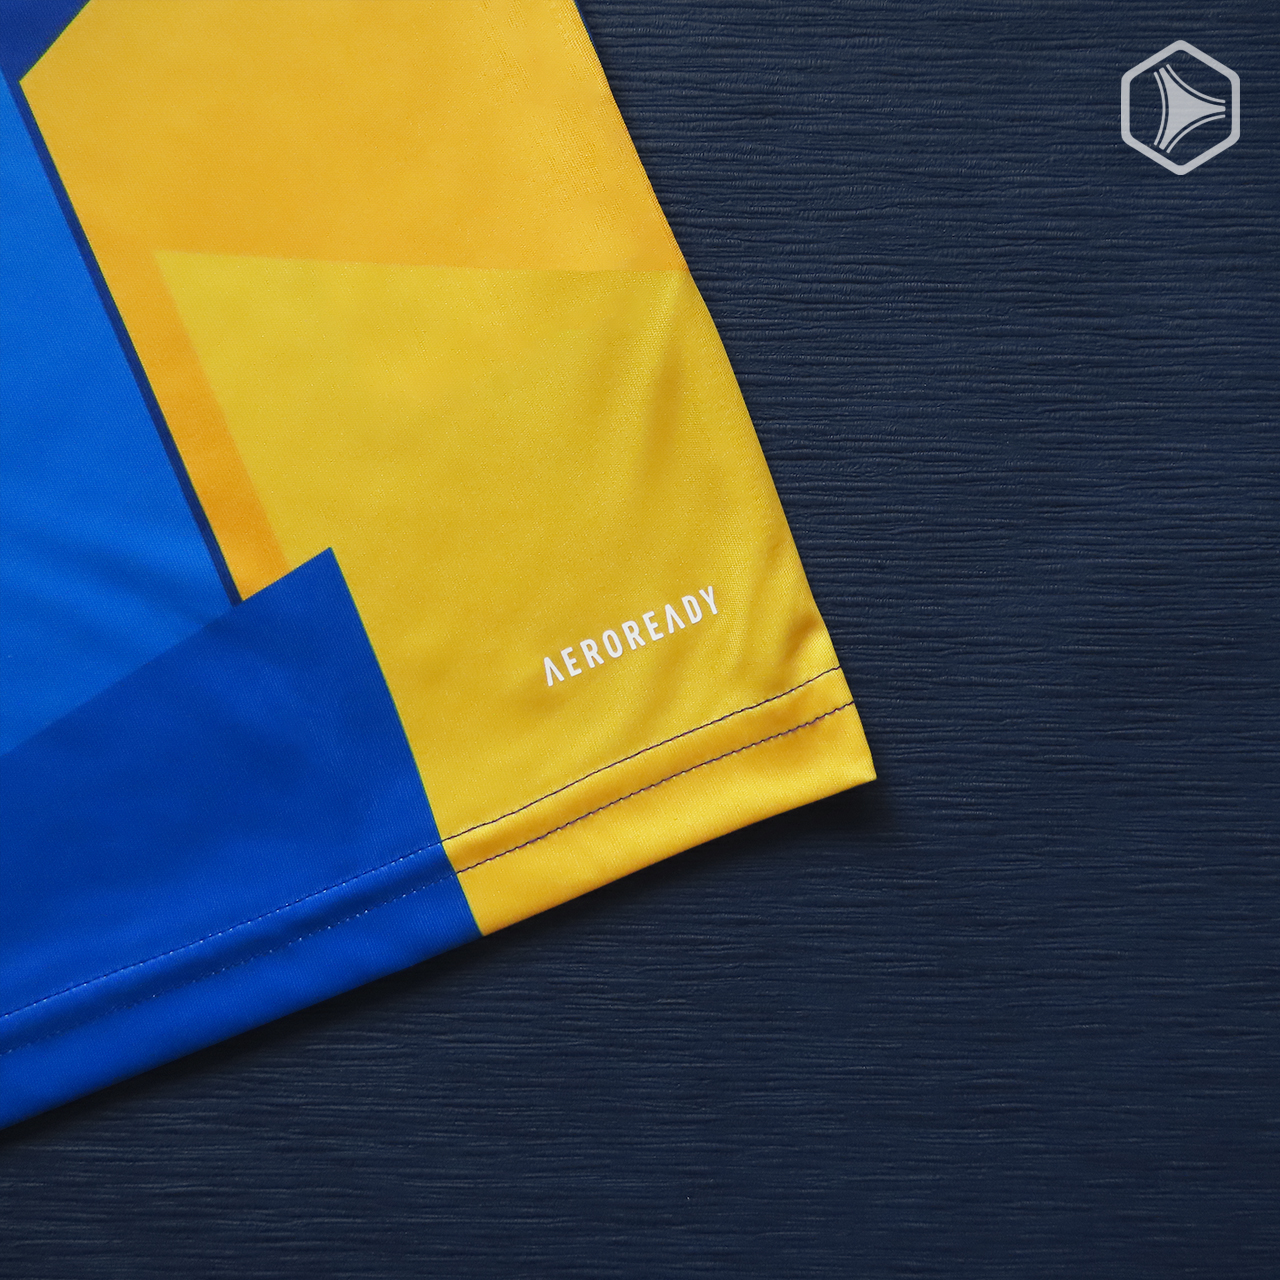 Tercera camiseta adidas de Boca Juniors 2021 2022